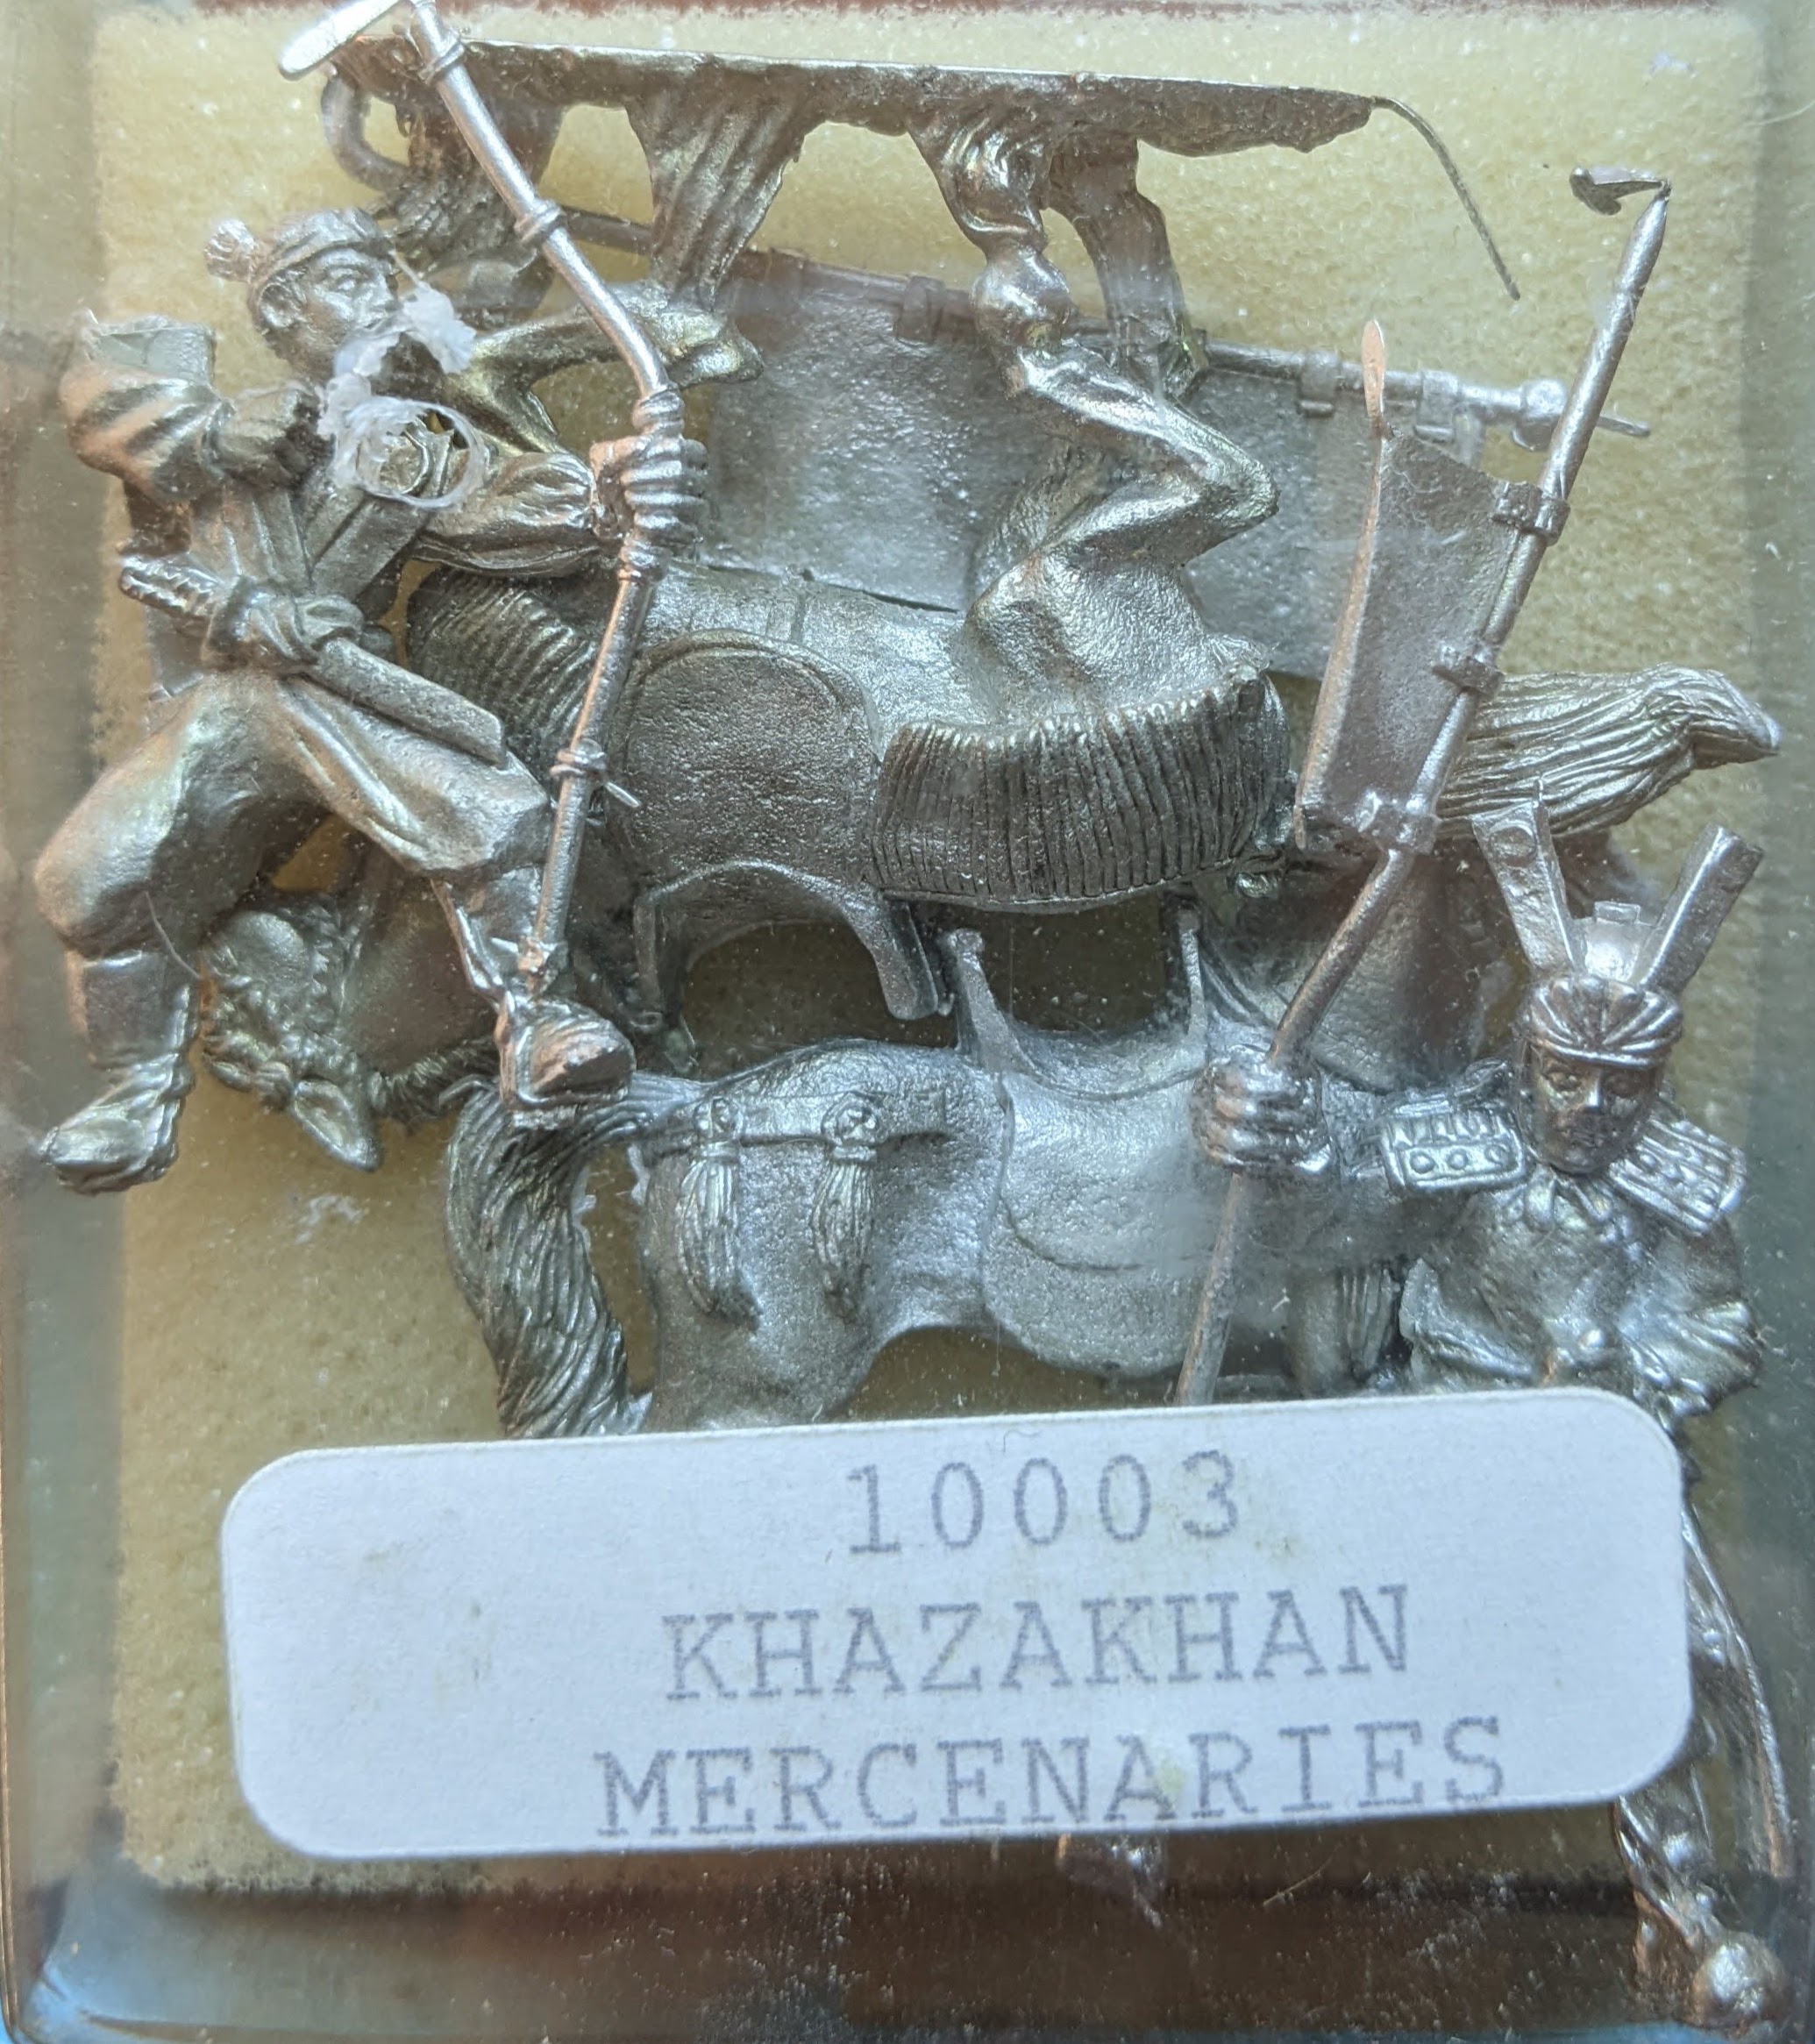 Khazakhan Mercenaries